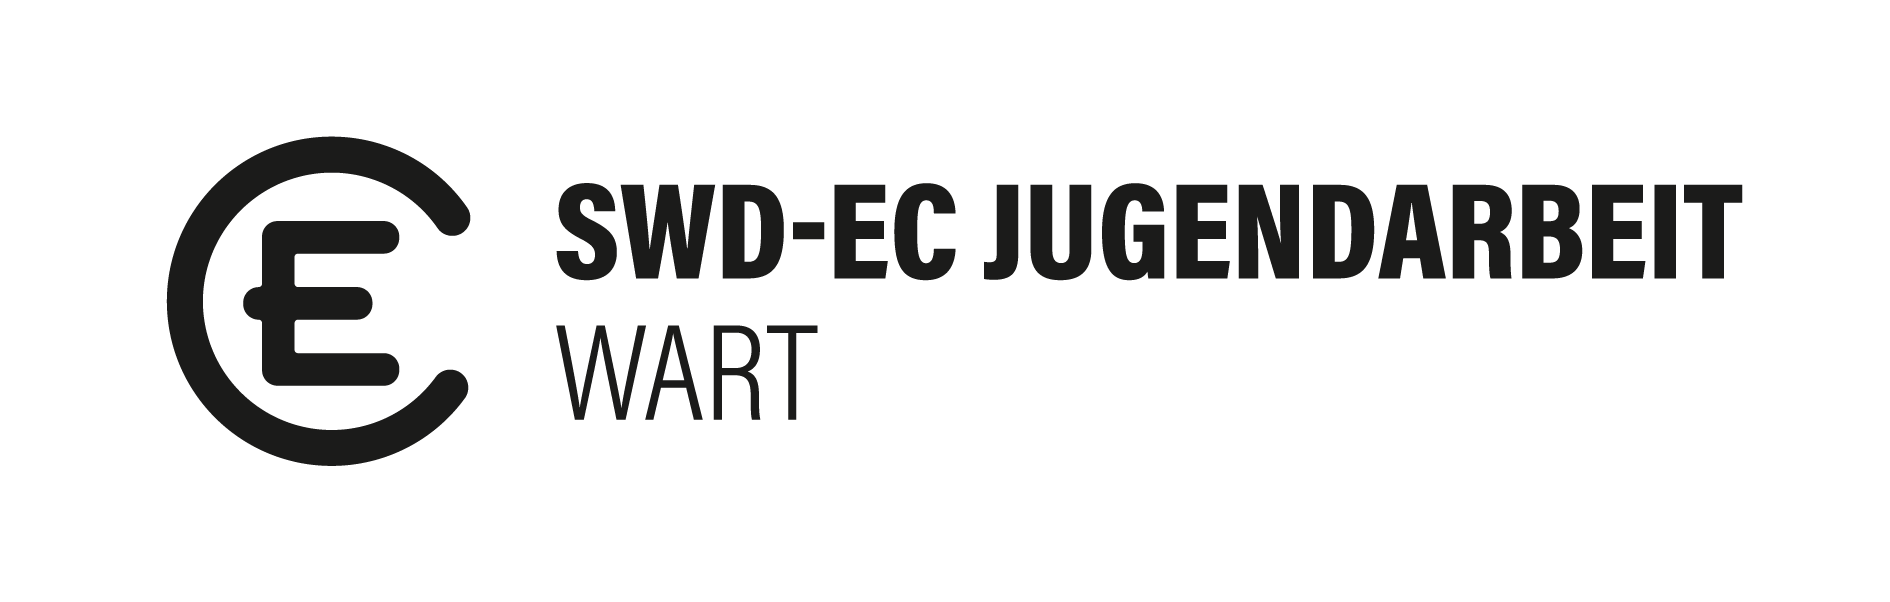 EC Wart